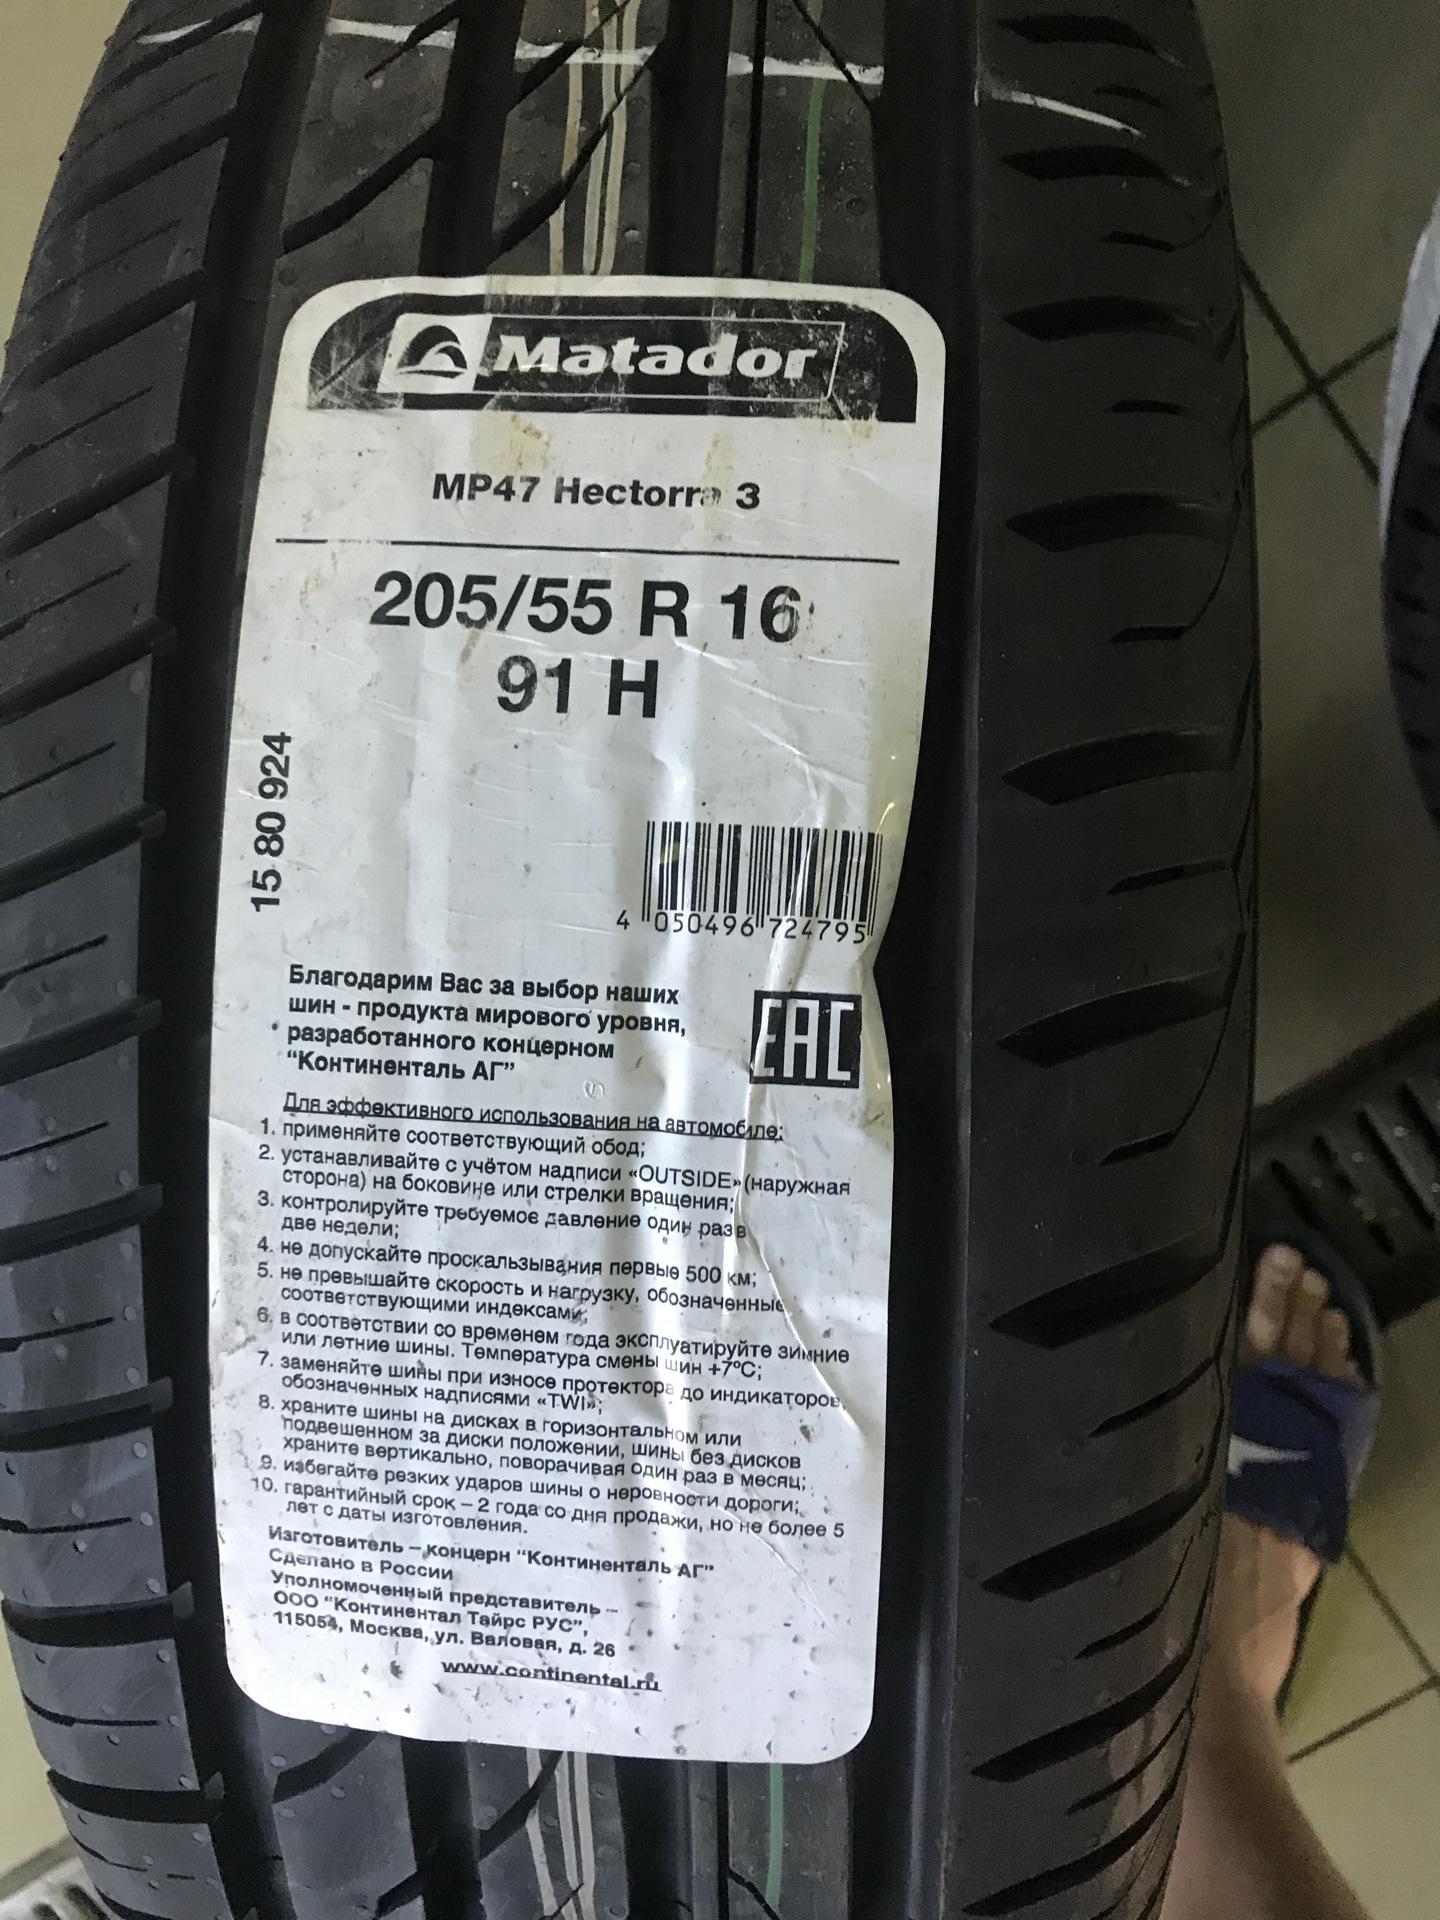 Матадор мр 47 hectorra 3. Шина Matador mp47 Hectorra 3 на диске. Код производителя шин. Матадор шины 205/55 r16 лето Hectorra 3 что обозначают цифры и надписи.